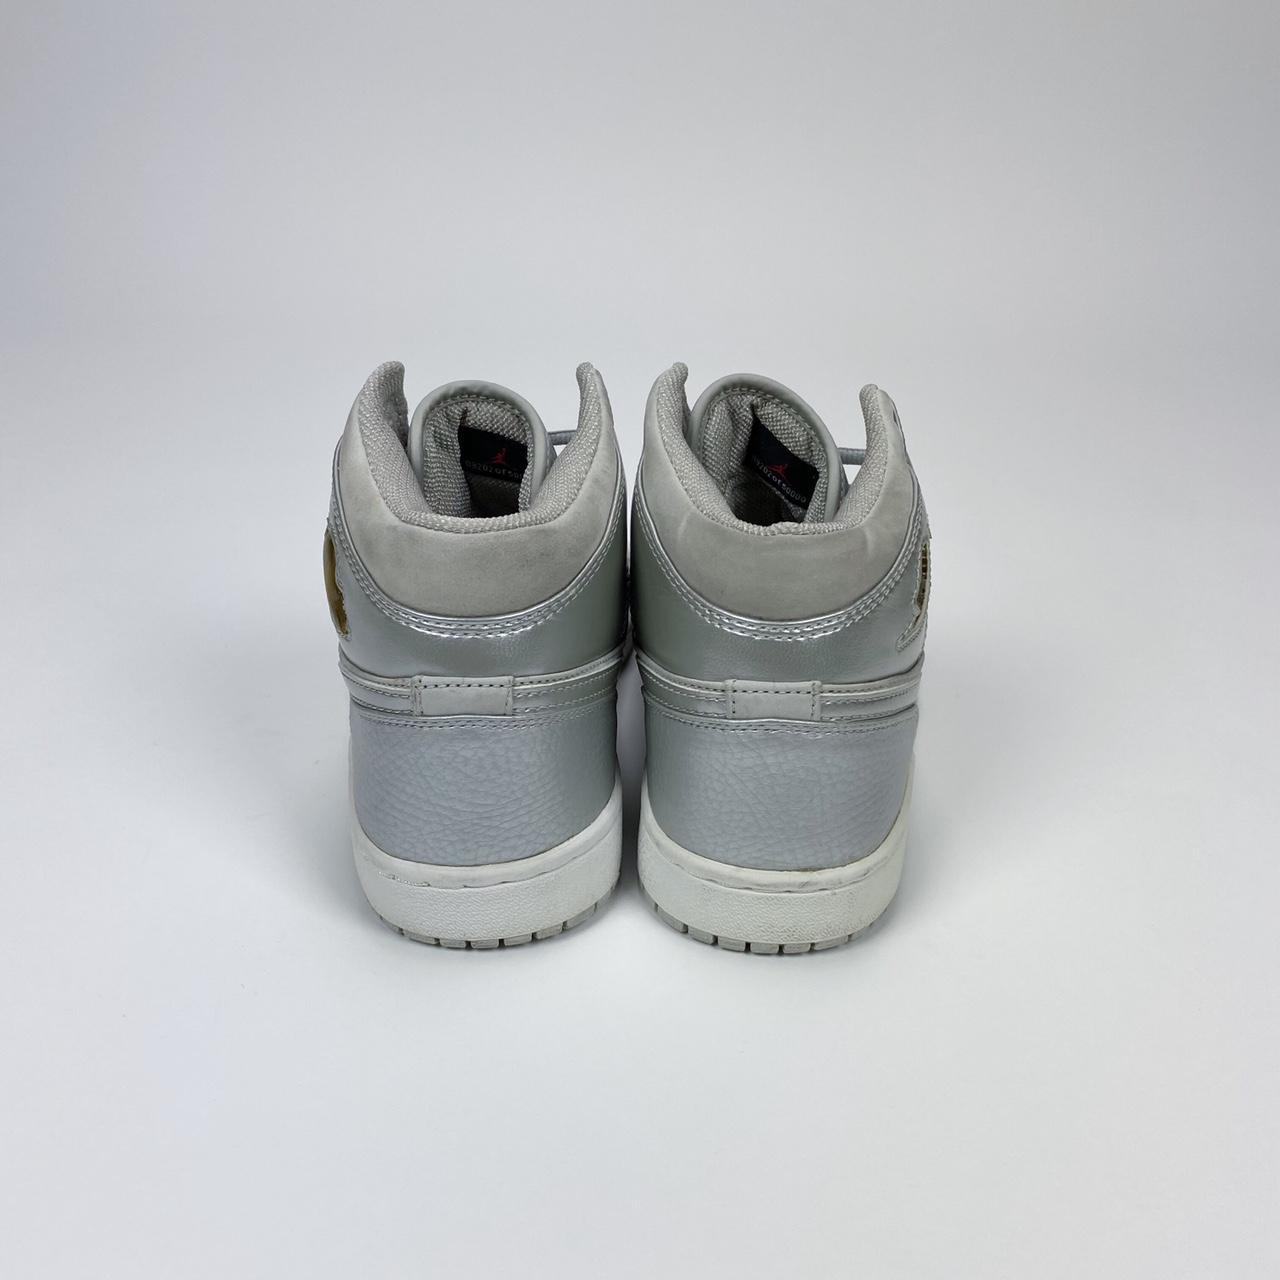 Product Image 4 - Vintage Jordan 1 (2001)

OG release

Sz